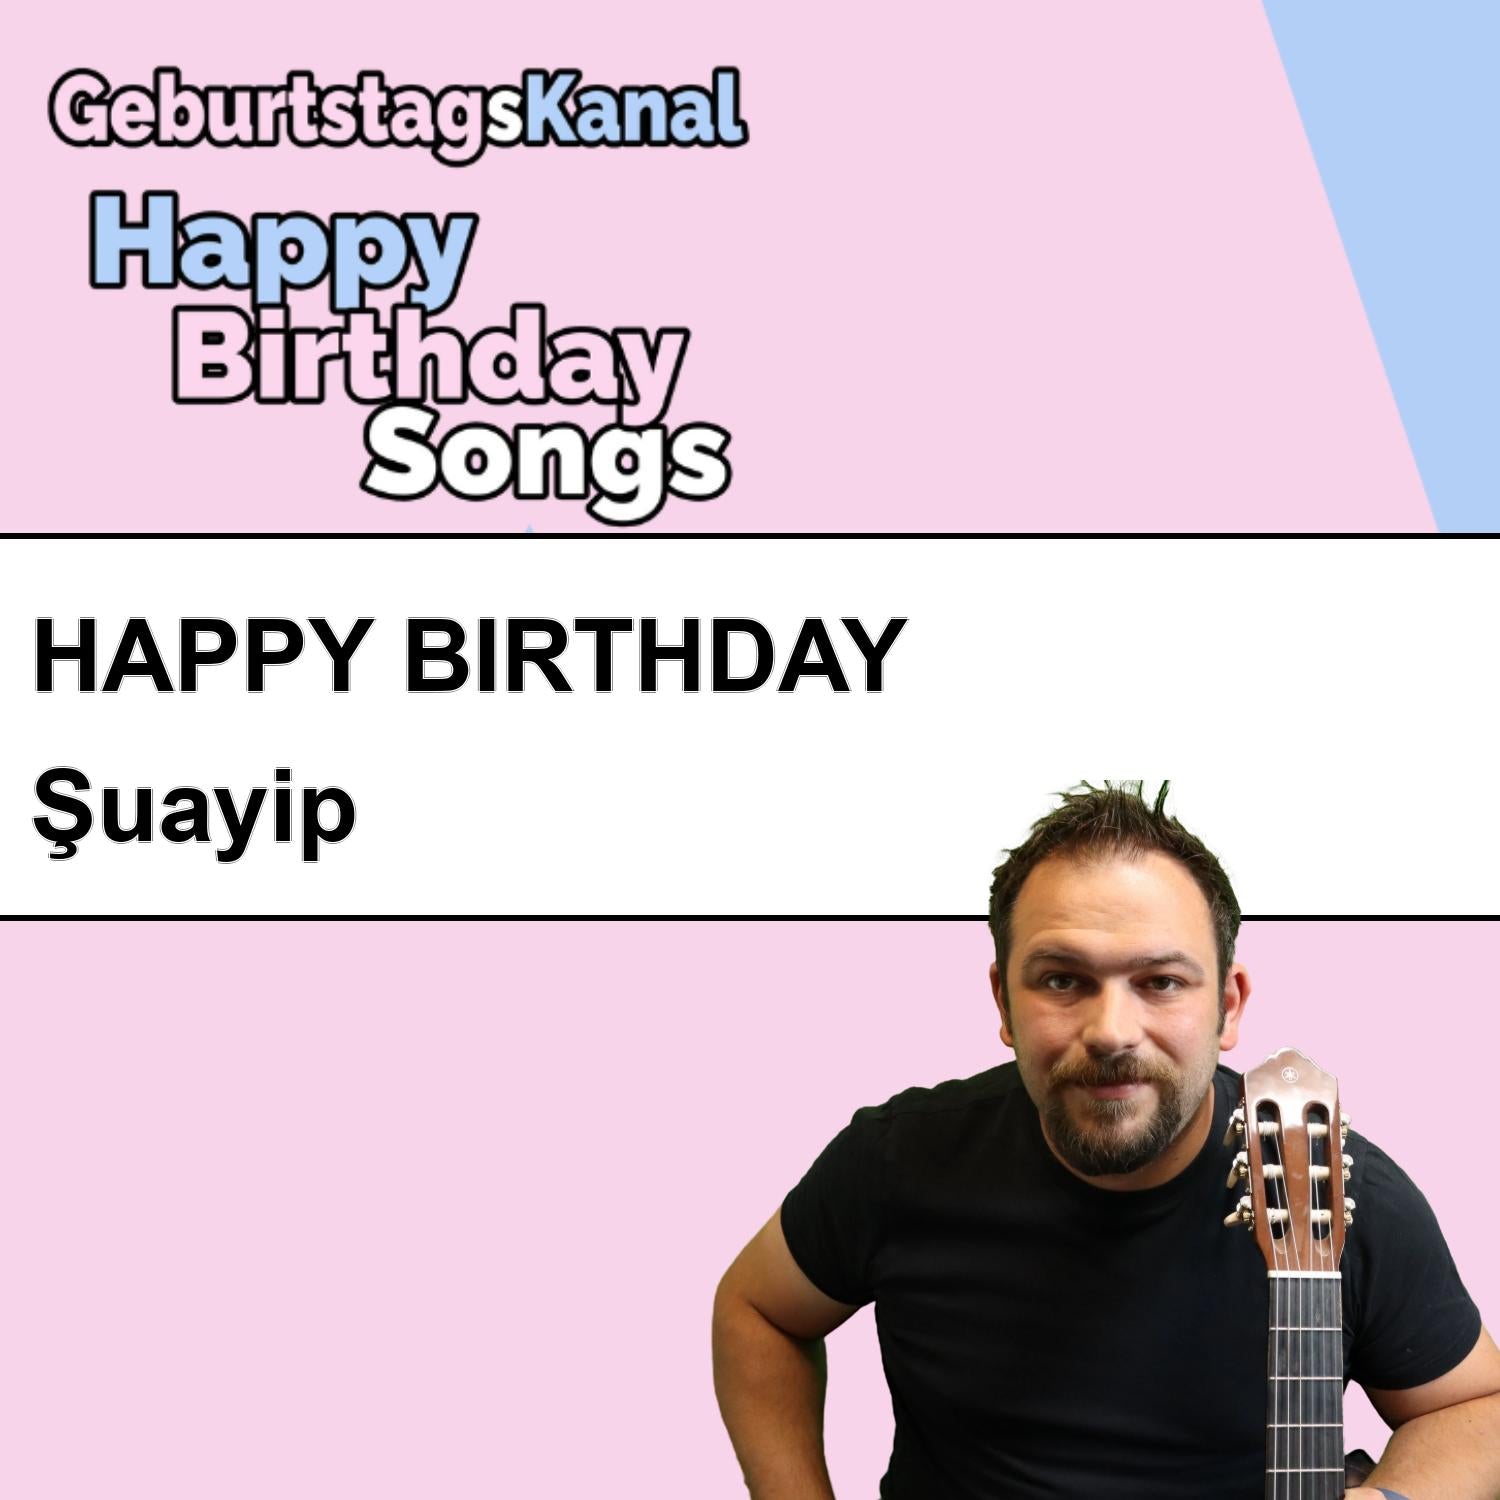 Produktbild Happy Birthday to you Şuayip mit Wunschgrußbotschaft